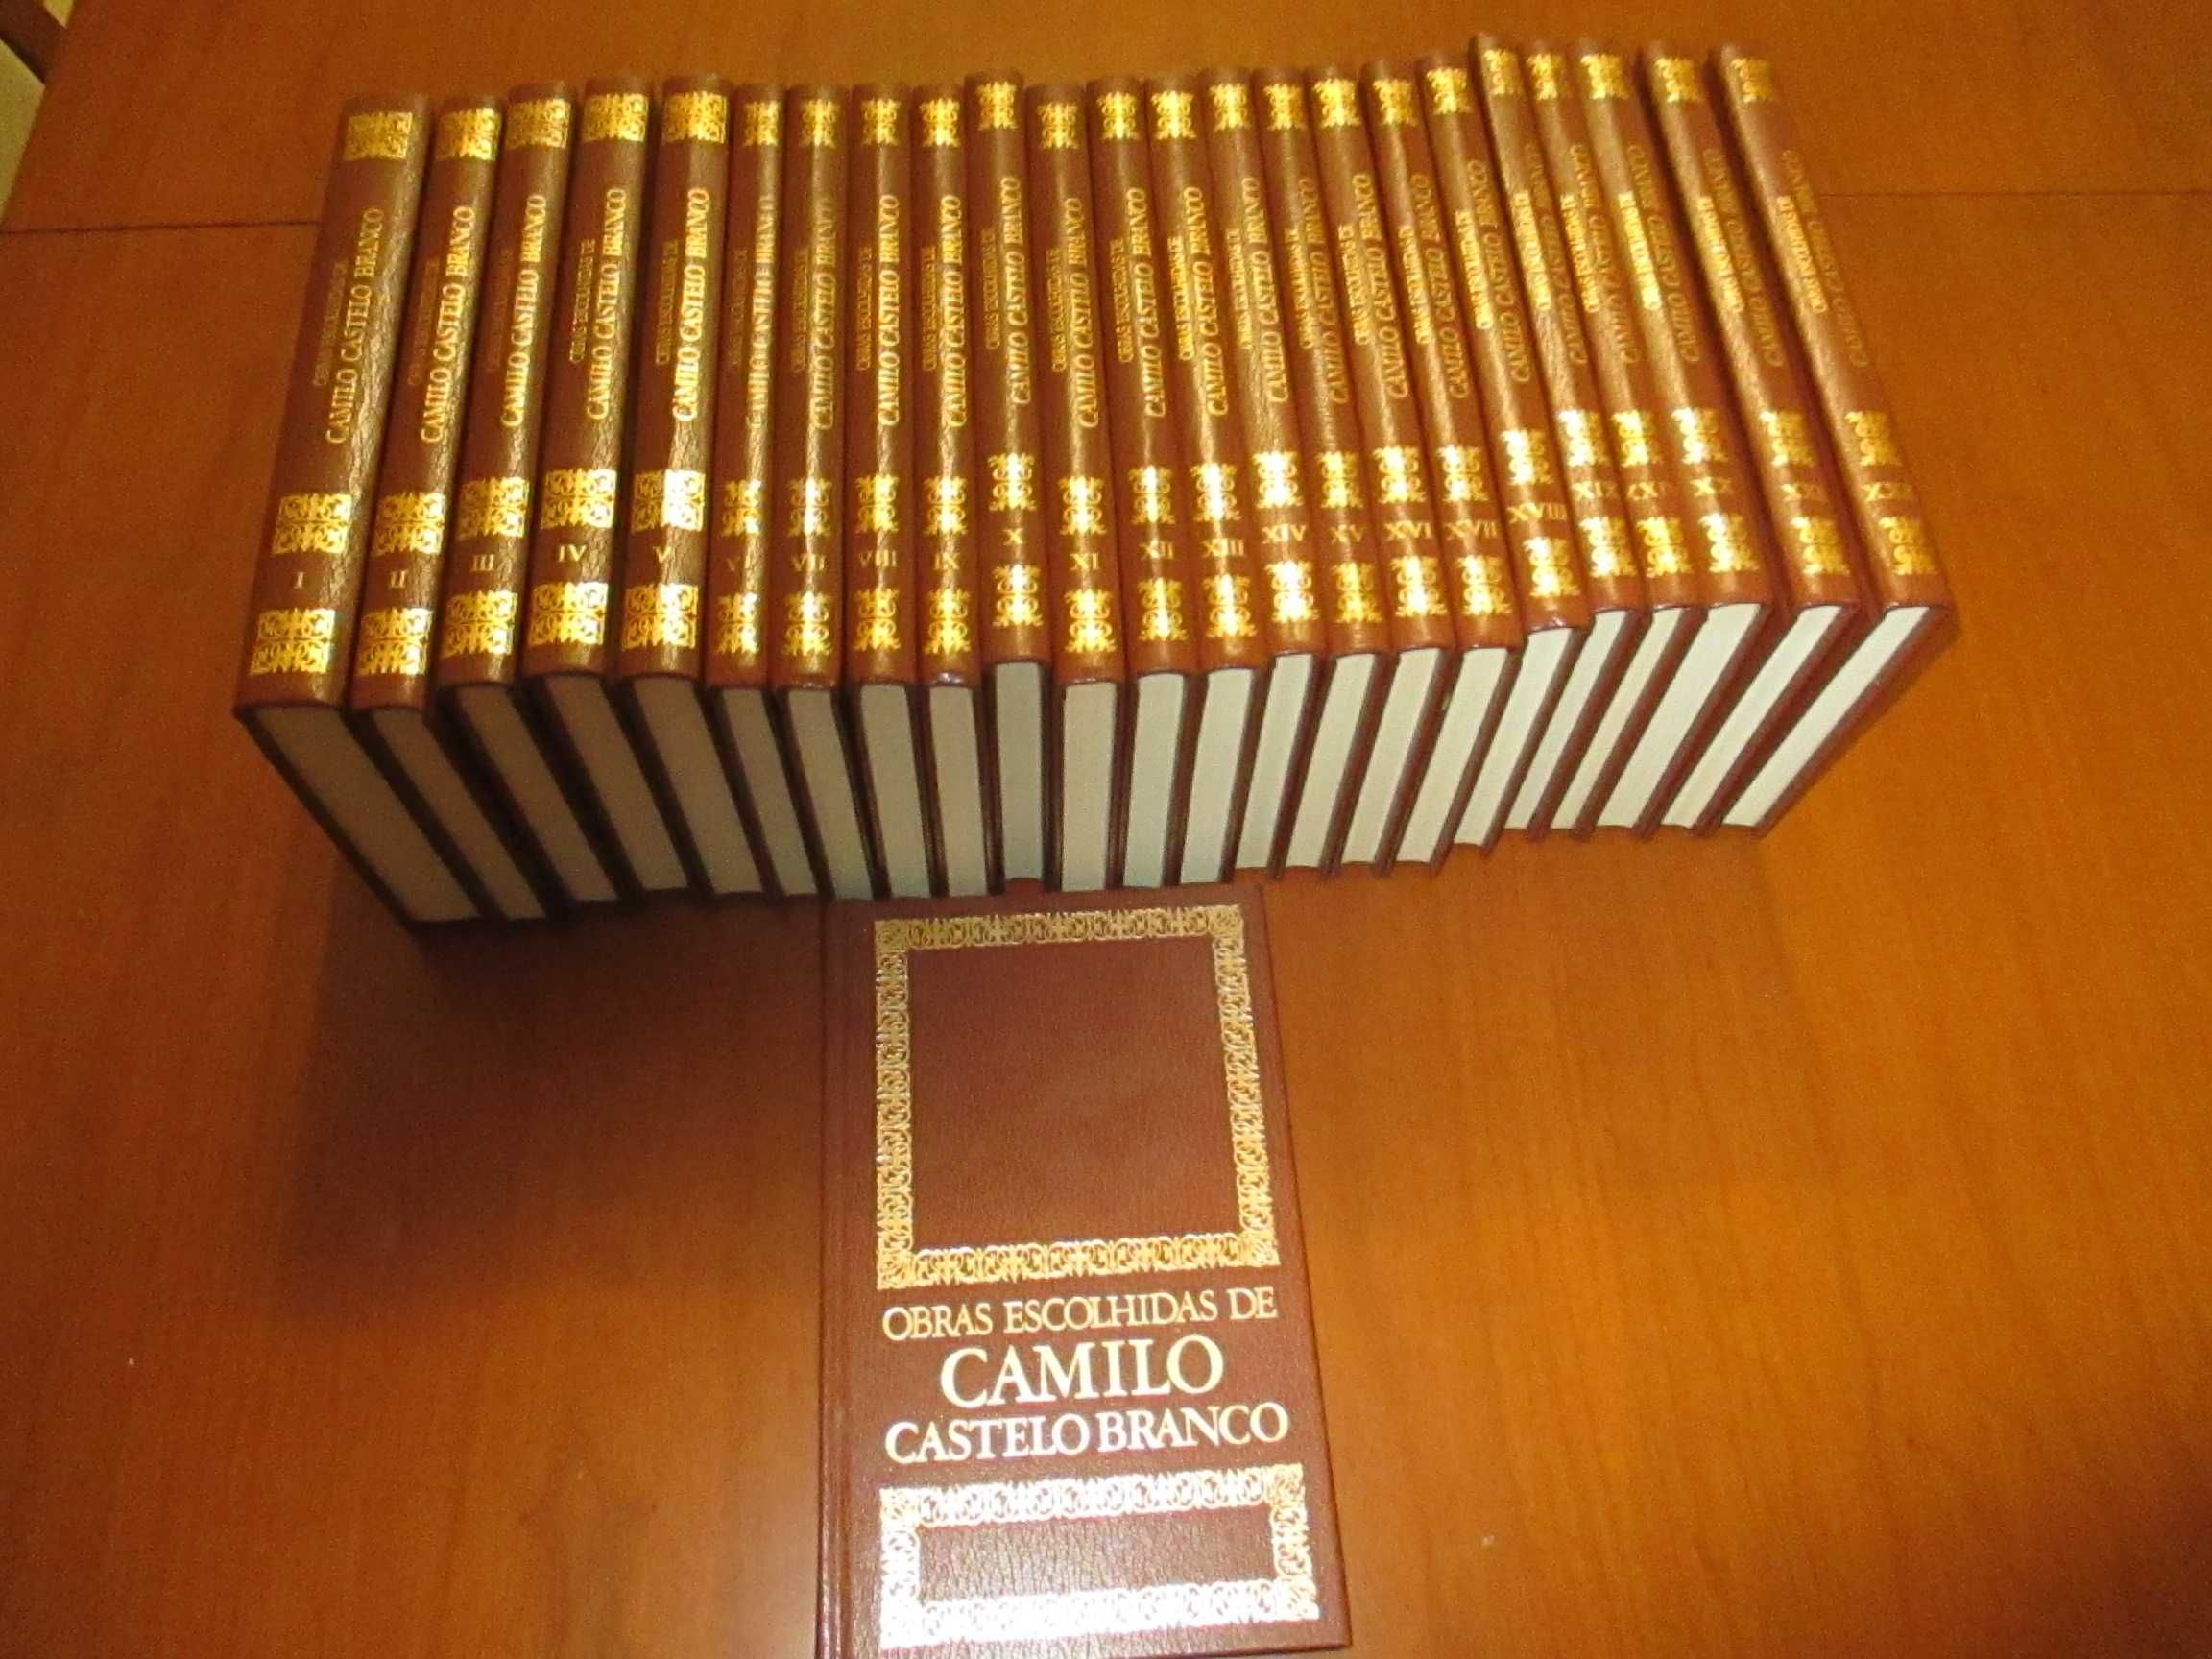 Obras Escolhidas  de Camilo Castelo Branco ( Colecção 24 Livros )